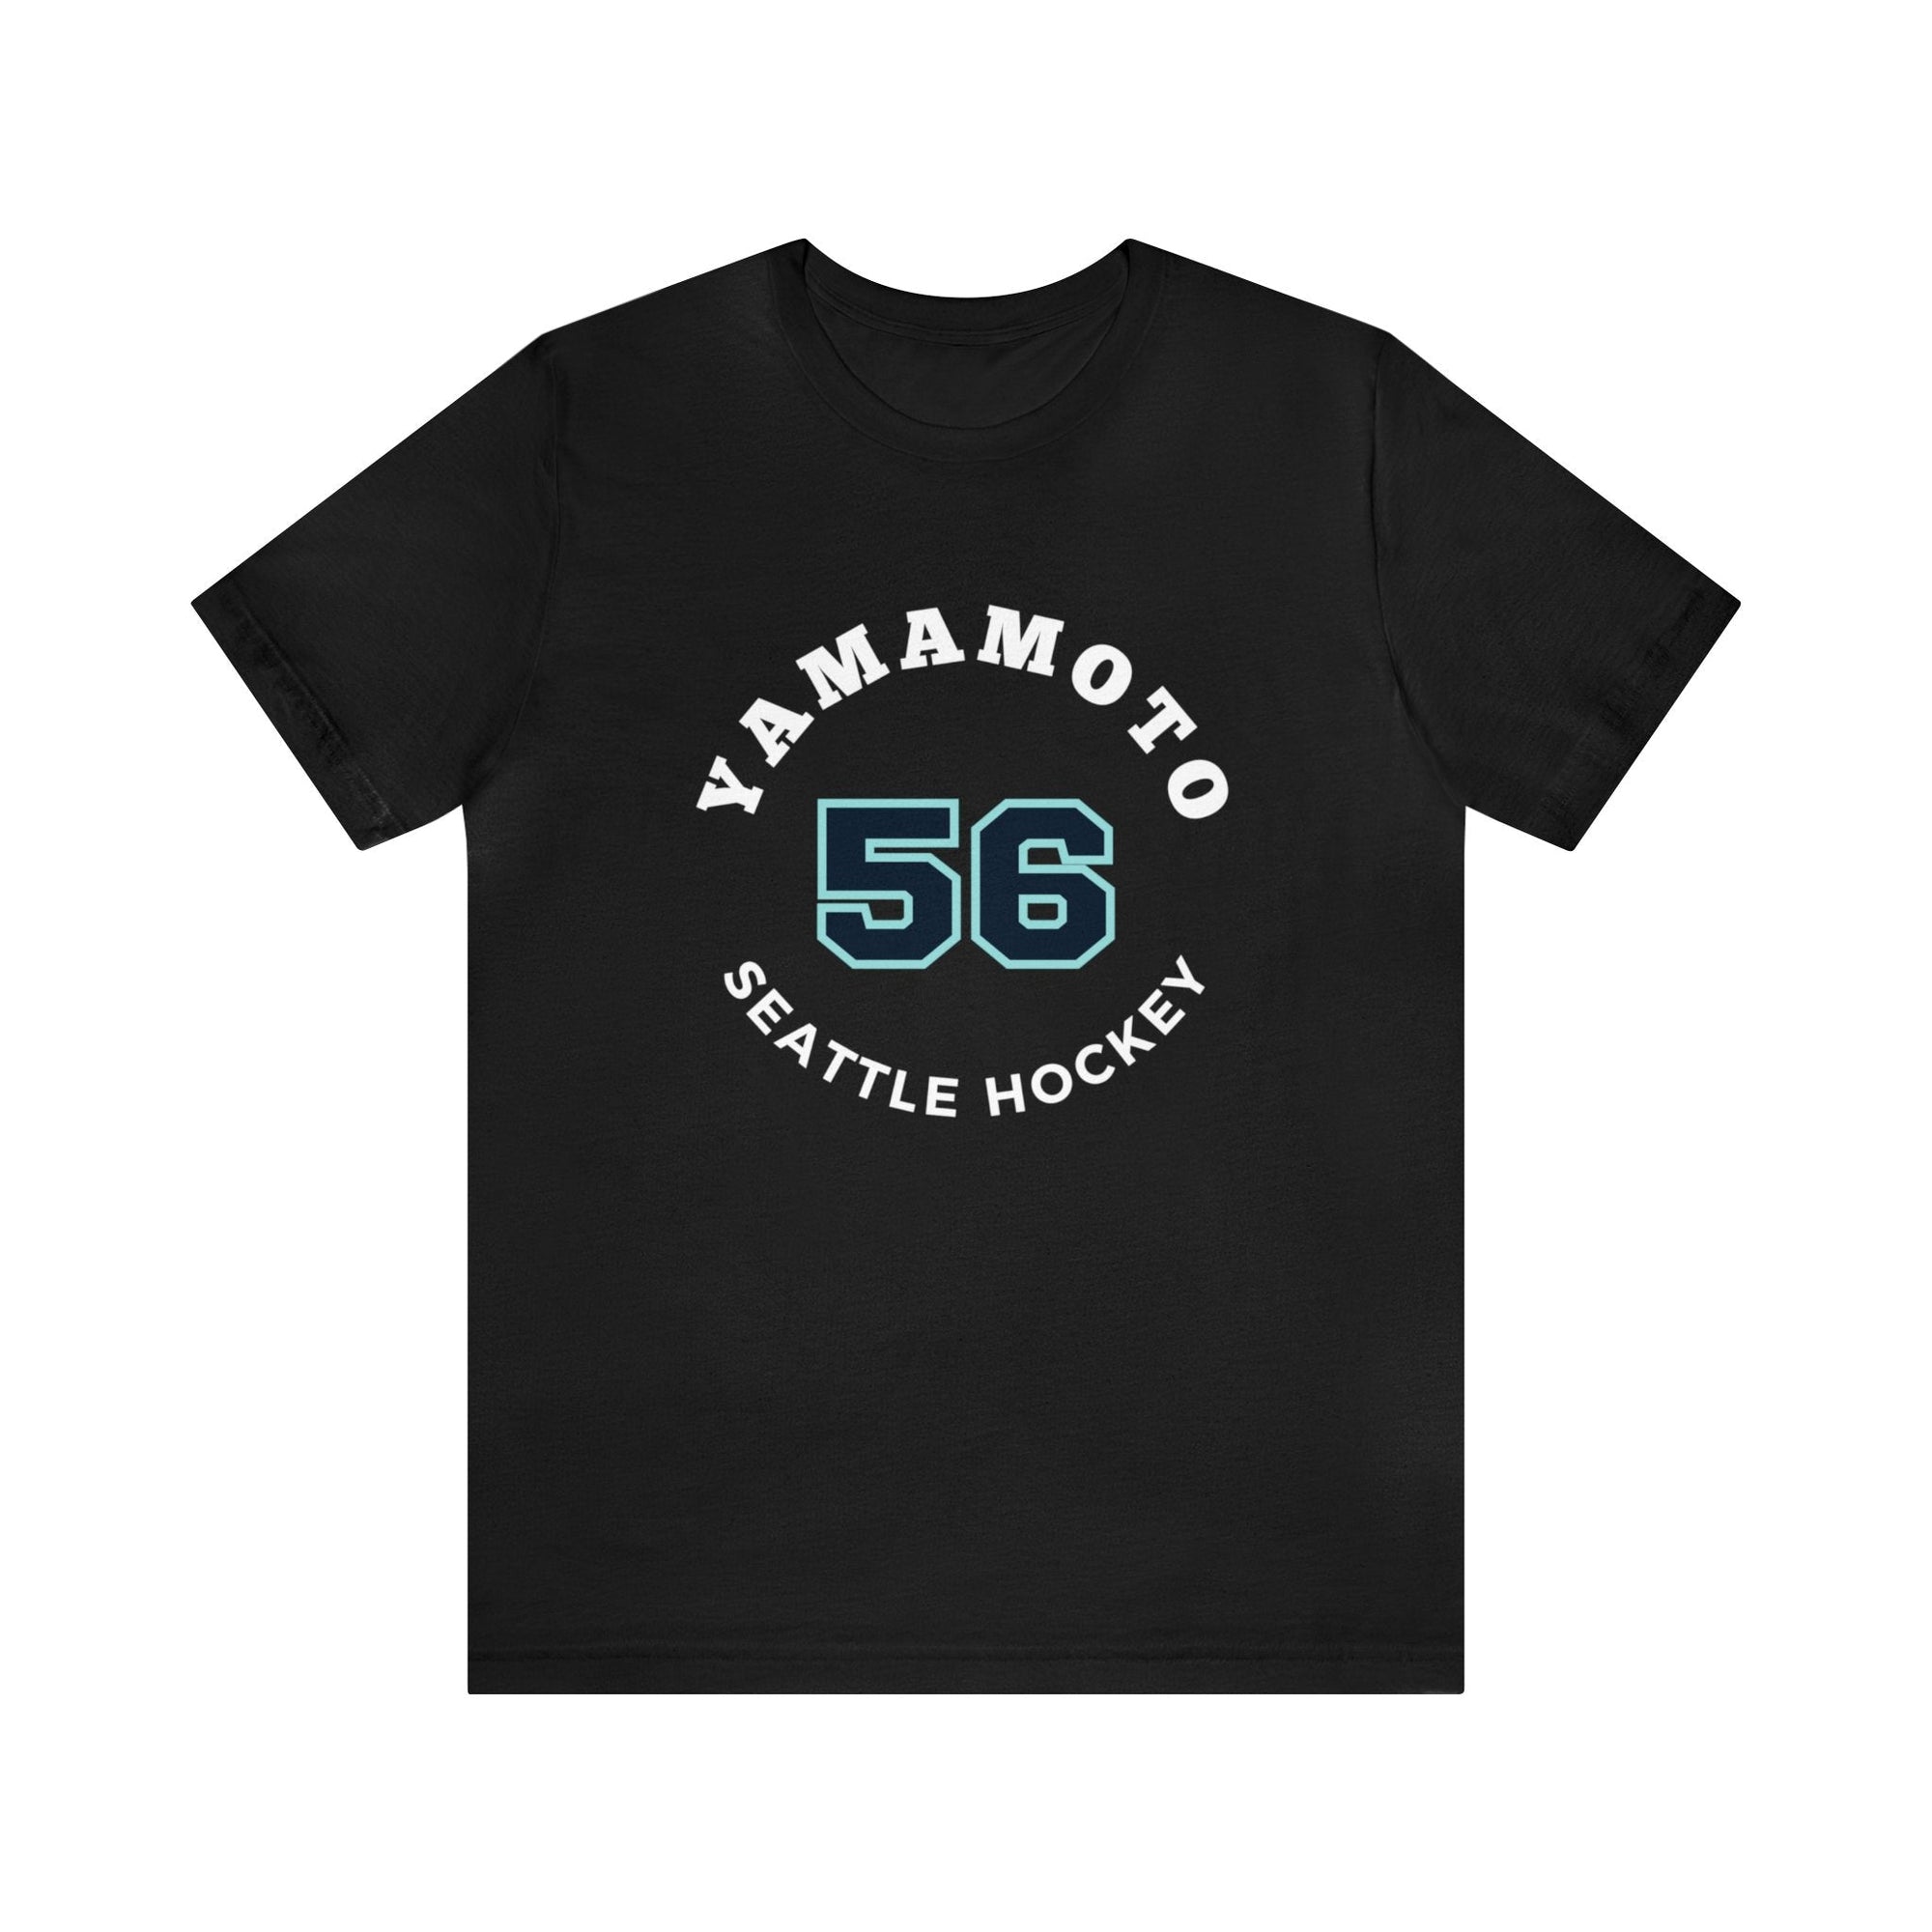 T-Shirt Yamamoto 56 Seattle Hockey Number Arch Design Unisex T-Shirt